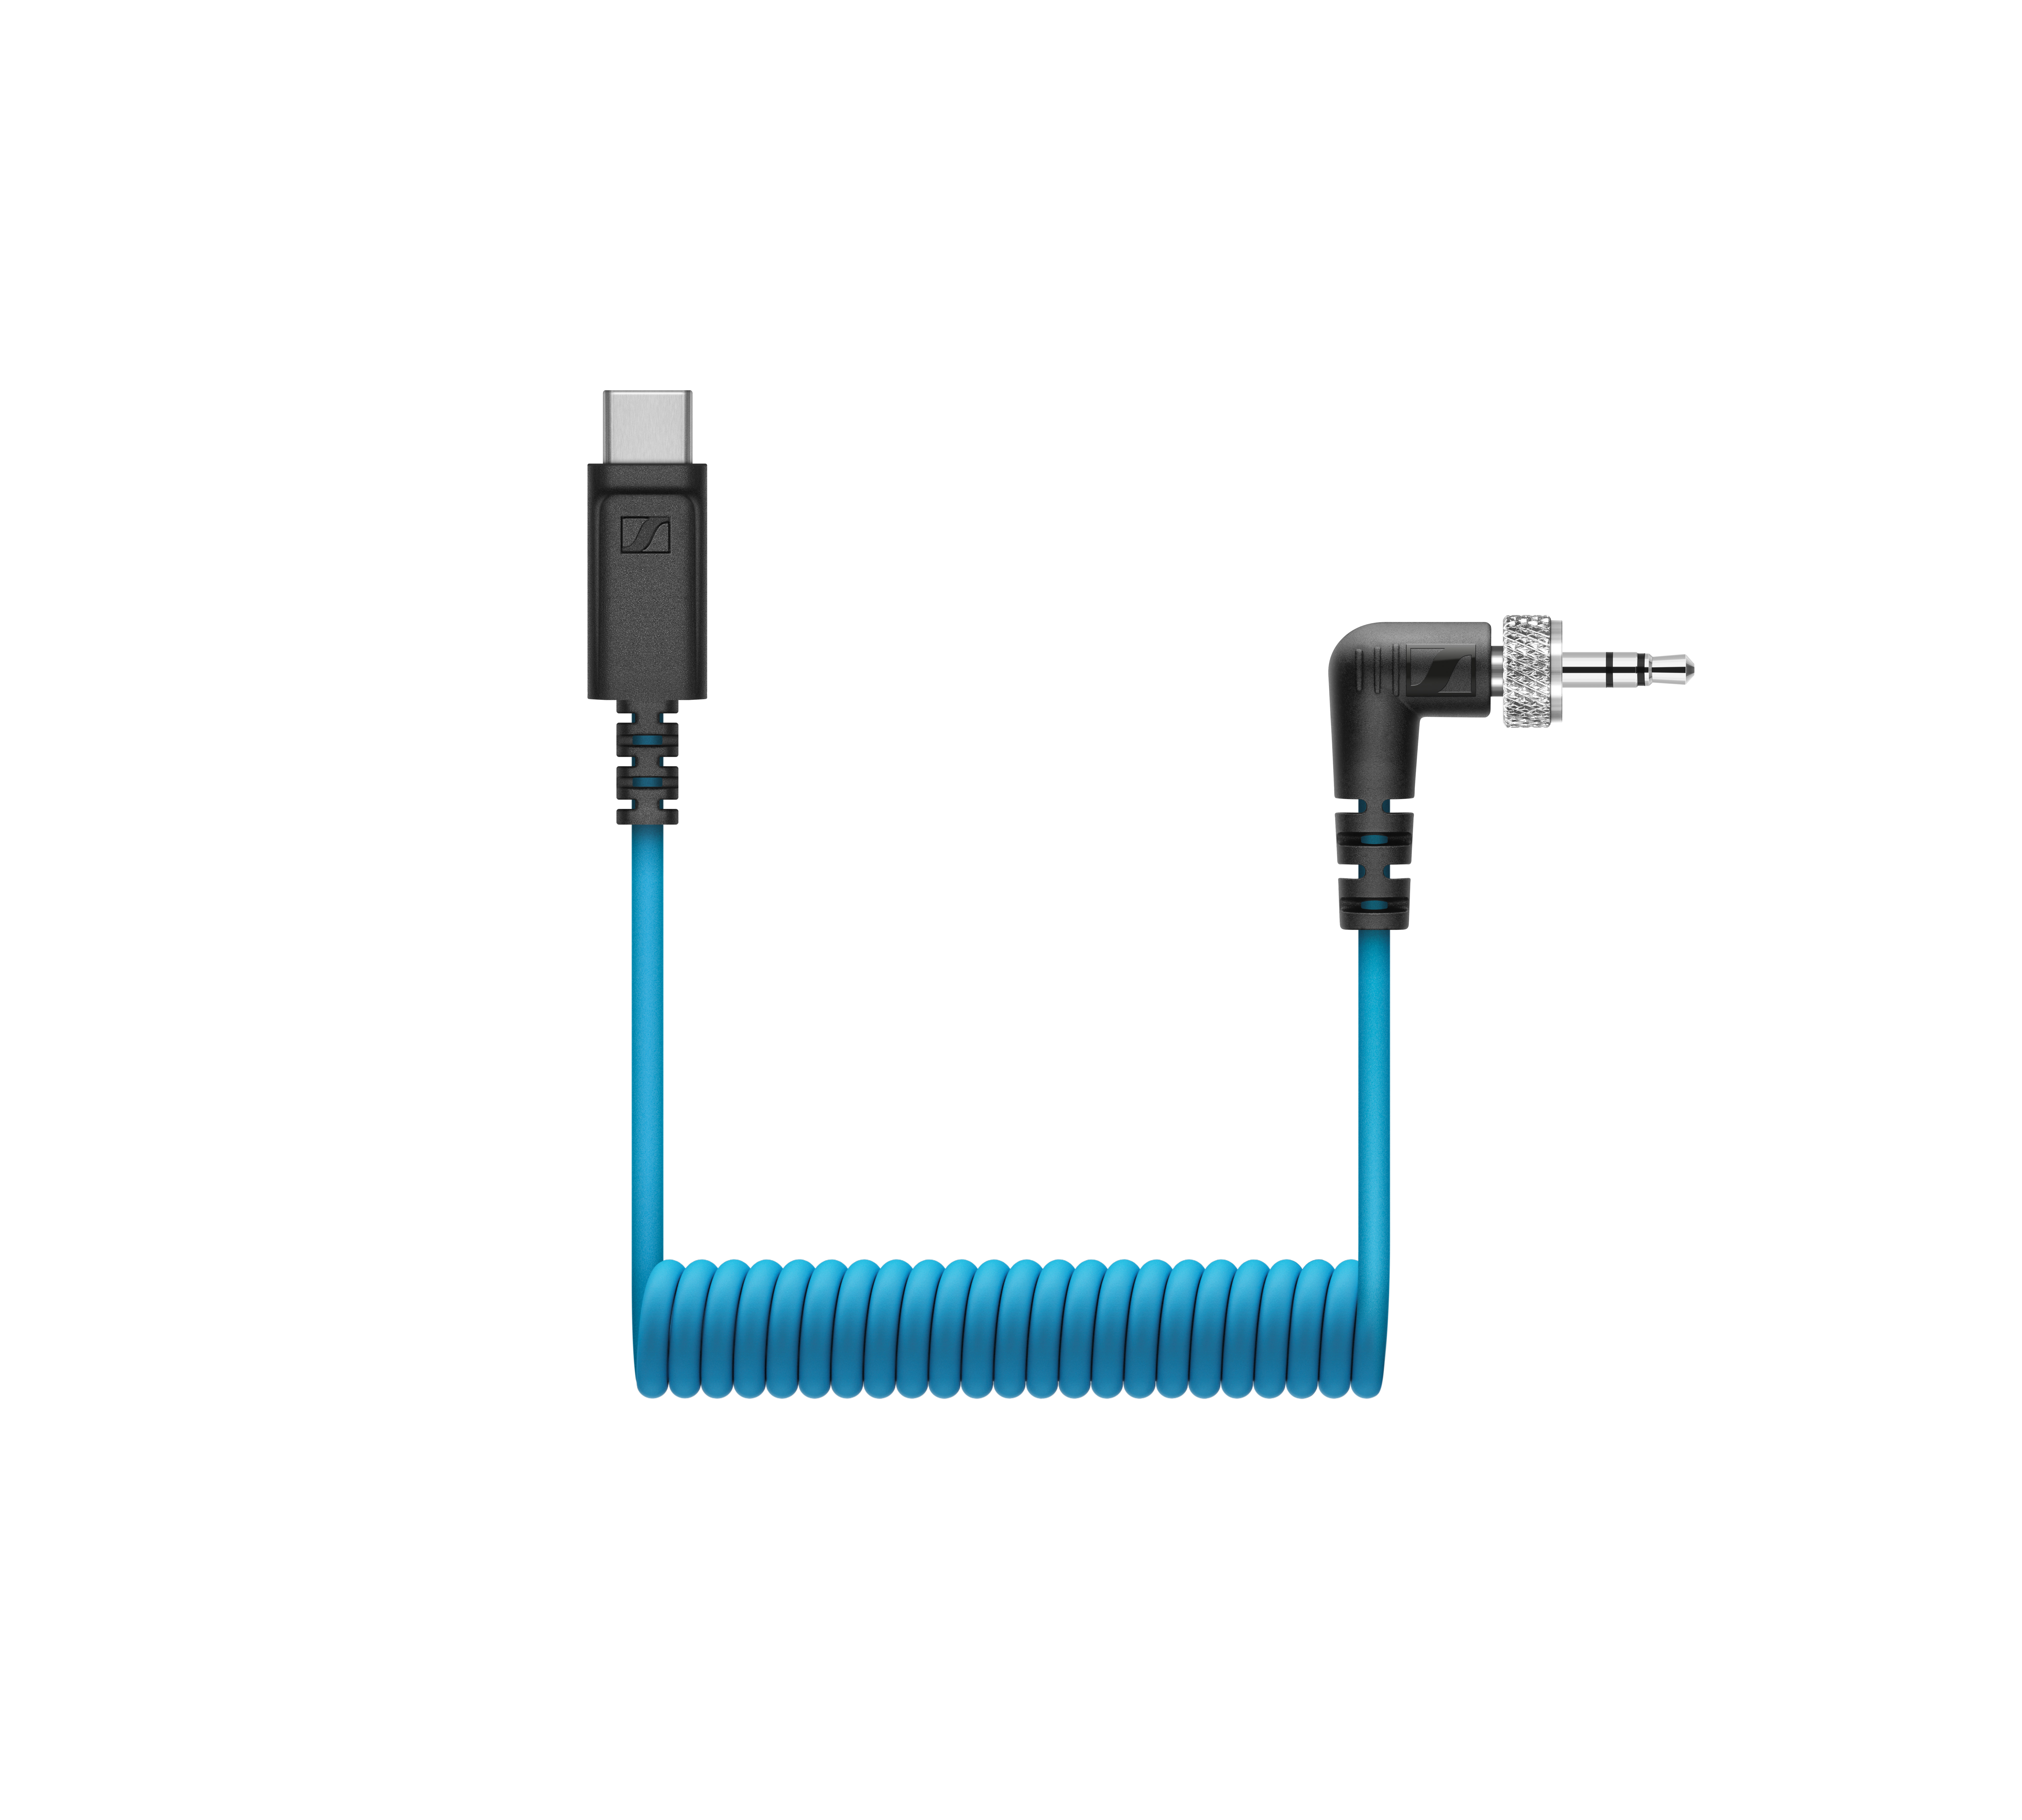 Le câble CL 35 USB-C rend les micros MKE 200, MKE 400 et XSW-D Portable Lav Mobile Kit compatibles avec les appareils mobiles équipés d’un port USB-C